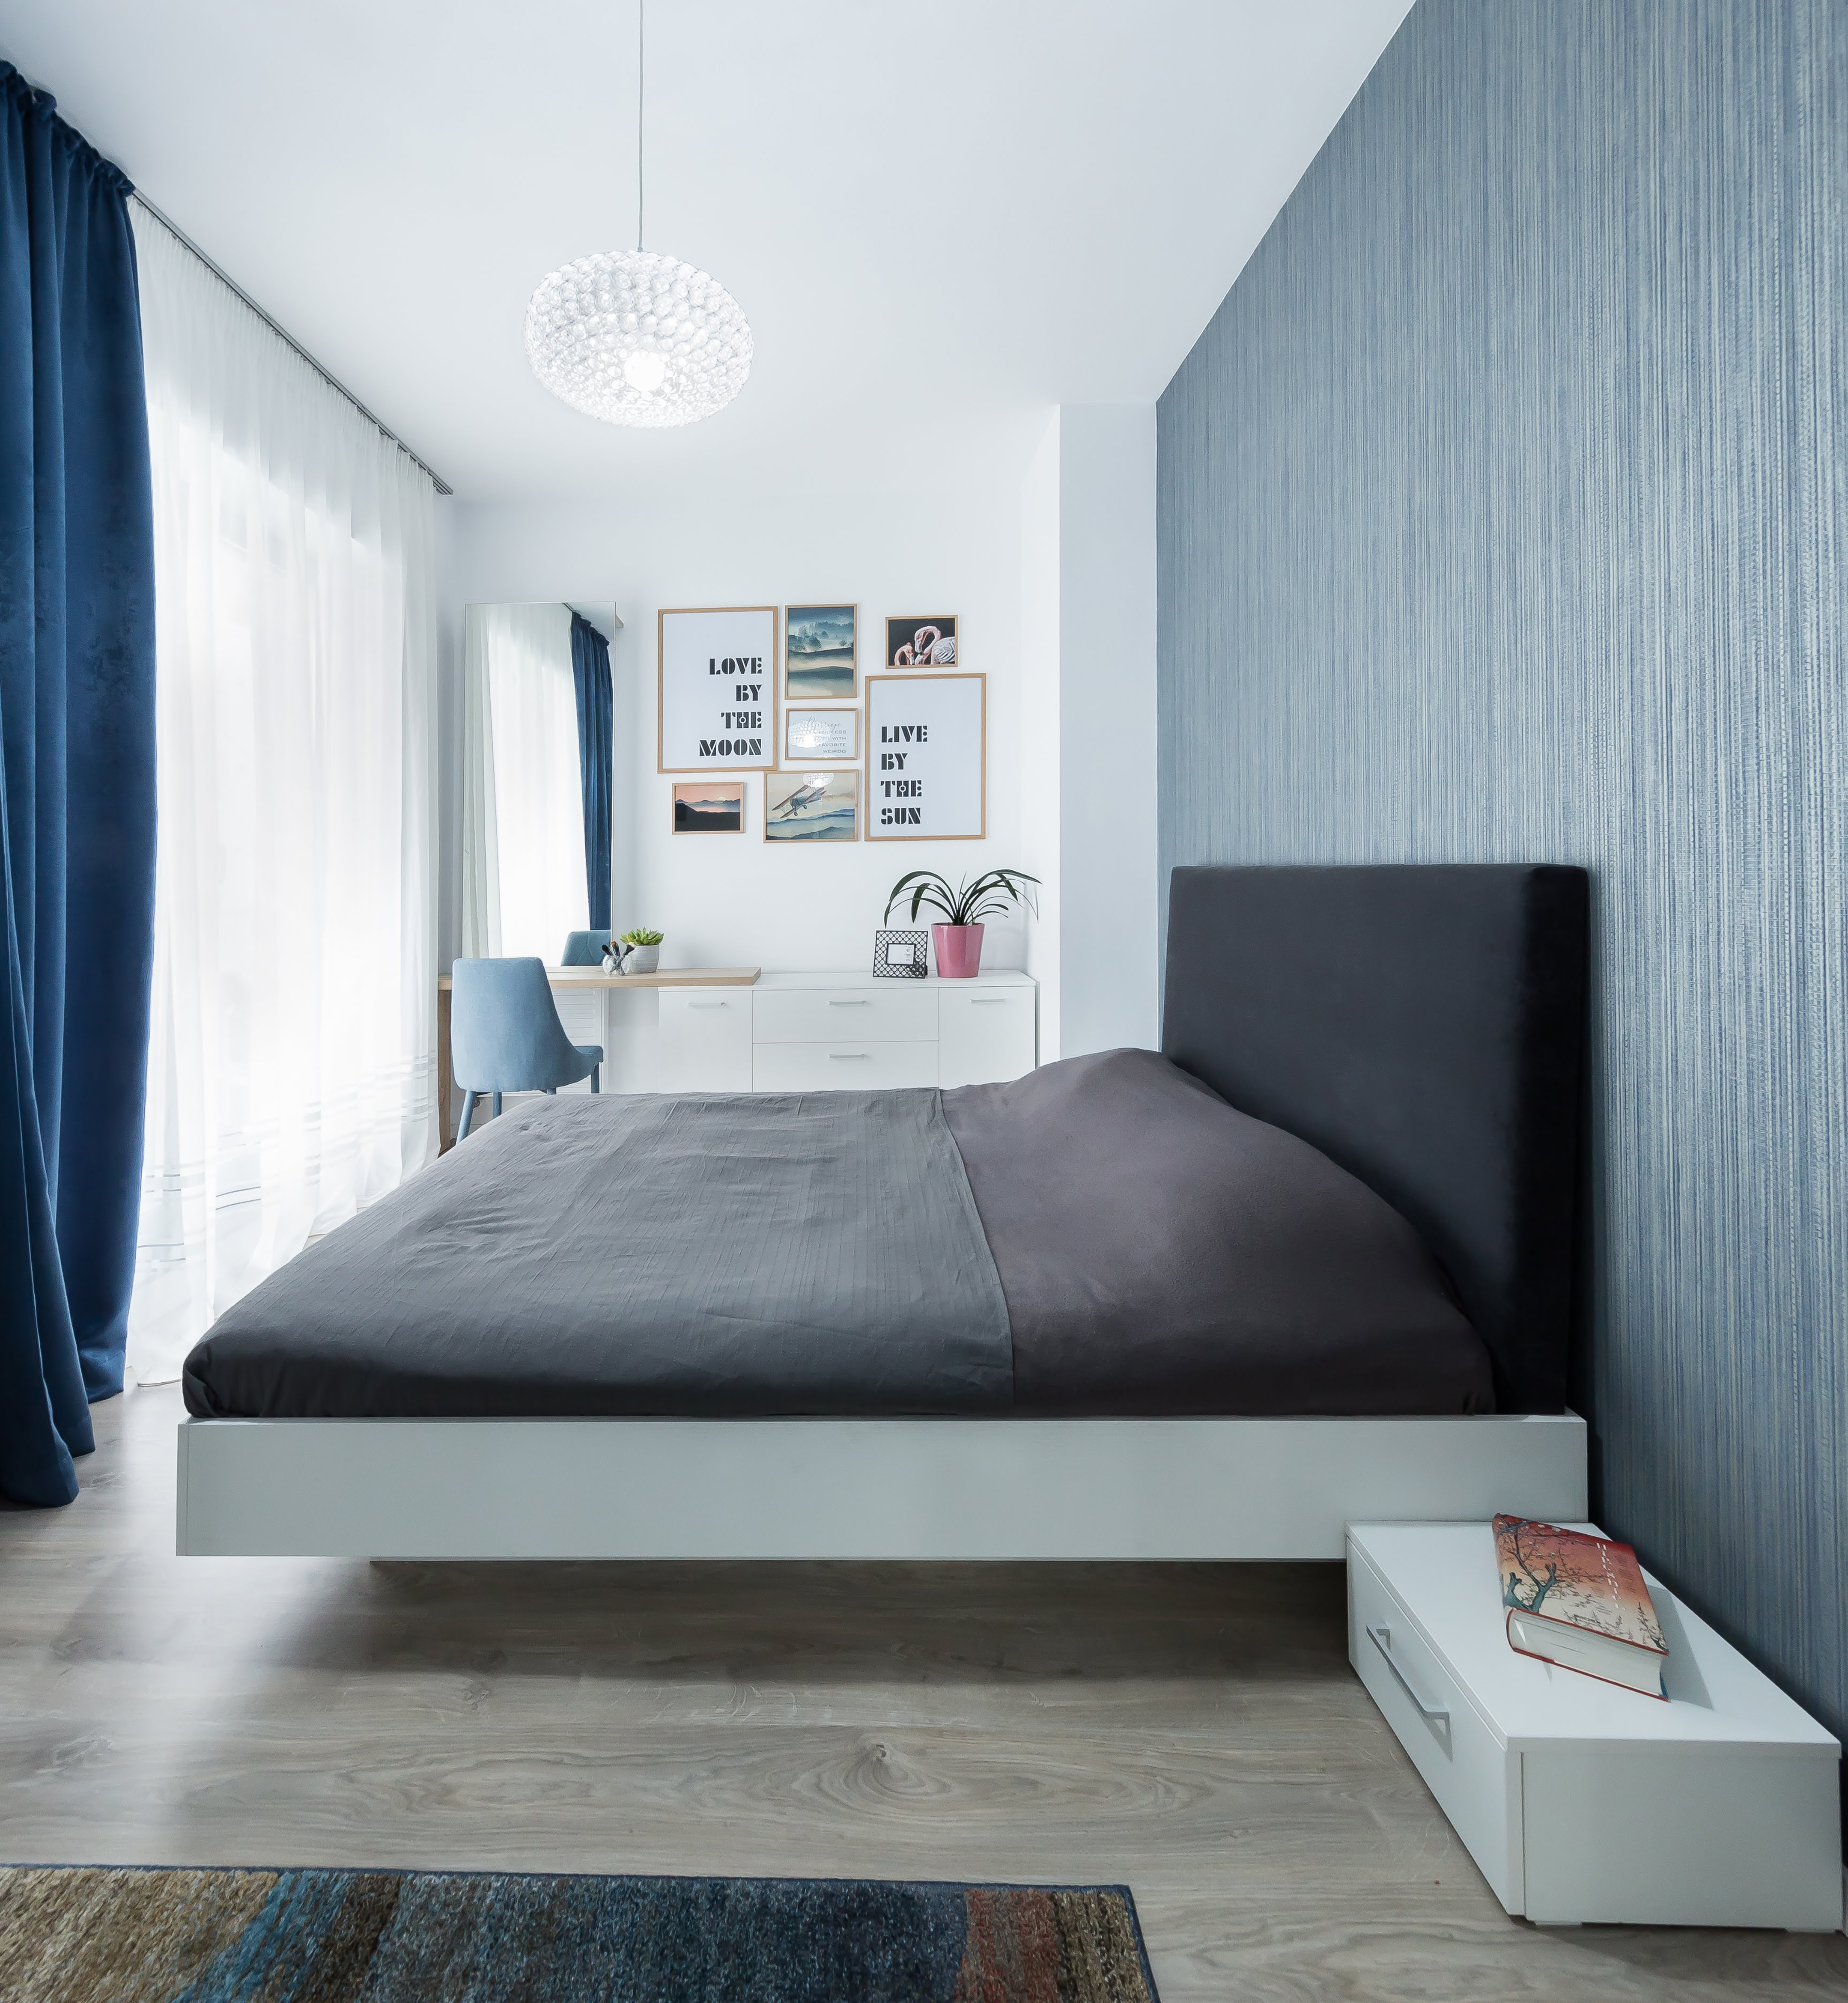 El sutil azul del dormitorio no solo resulta relajante, sino que también matiza la luz. La cama, aunque es grande, tiene estilo y es atemporal gracias al notable gris oscuro.